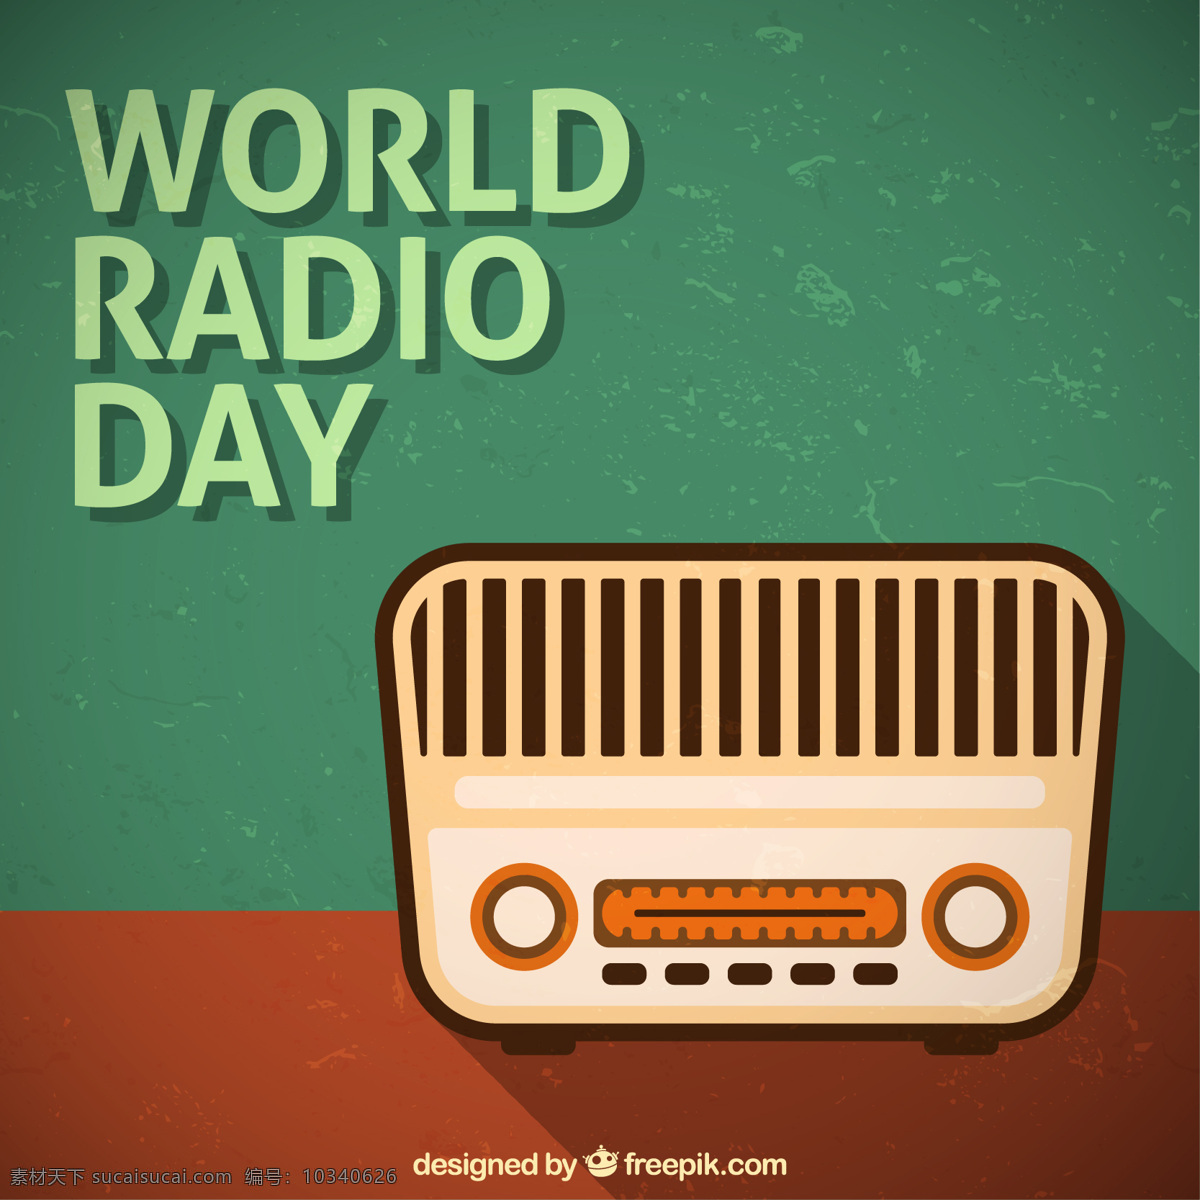 老式 收音机 背景 复古 音乐 世界 平面 通讯 无线电 声音 平面设计 扬声器 媒体 音乐背景 音量 一天 绿色